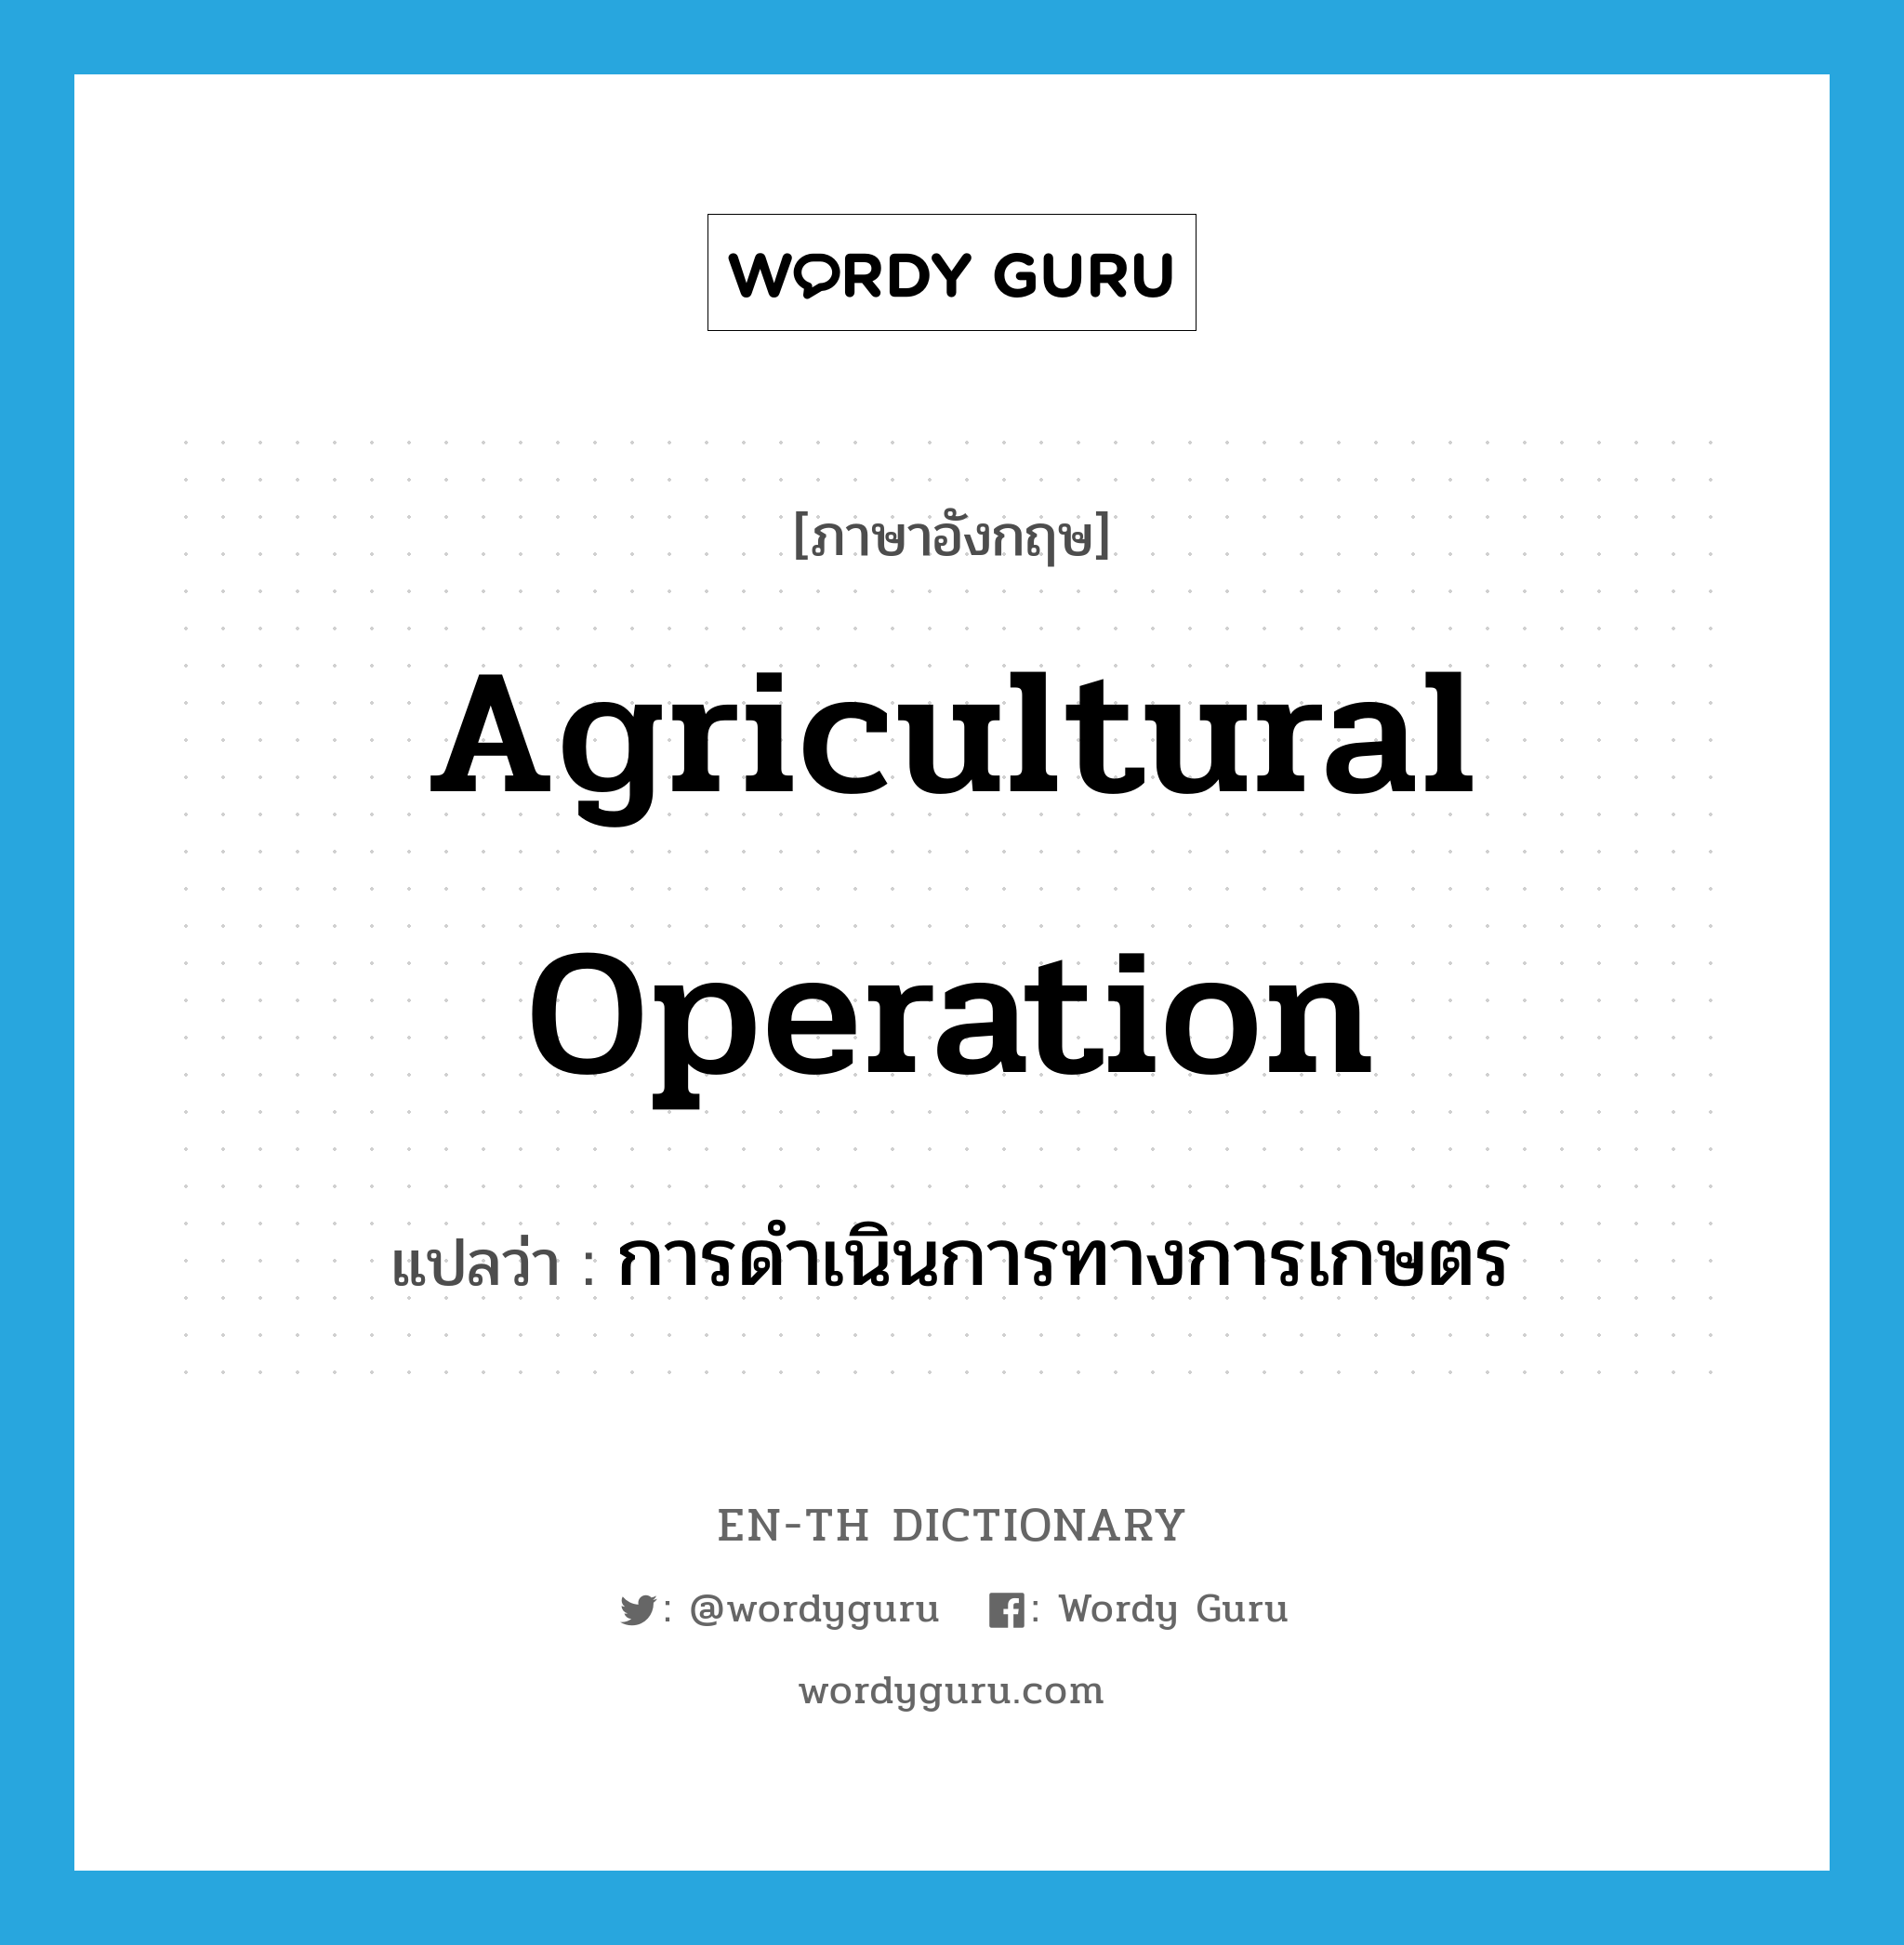 การดำเนินการทางการเกษตร ภาษาอังกฤษ?, คำศัพท์ภาษาอังกฤษ การดำเนินการทางการเกษตร แปลว่า Agricultural operation